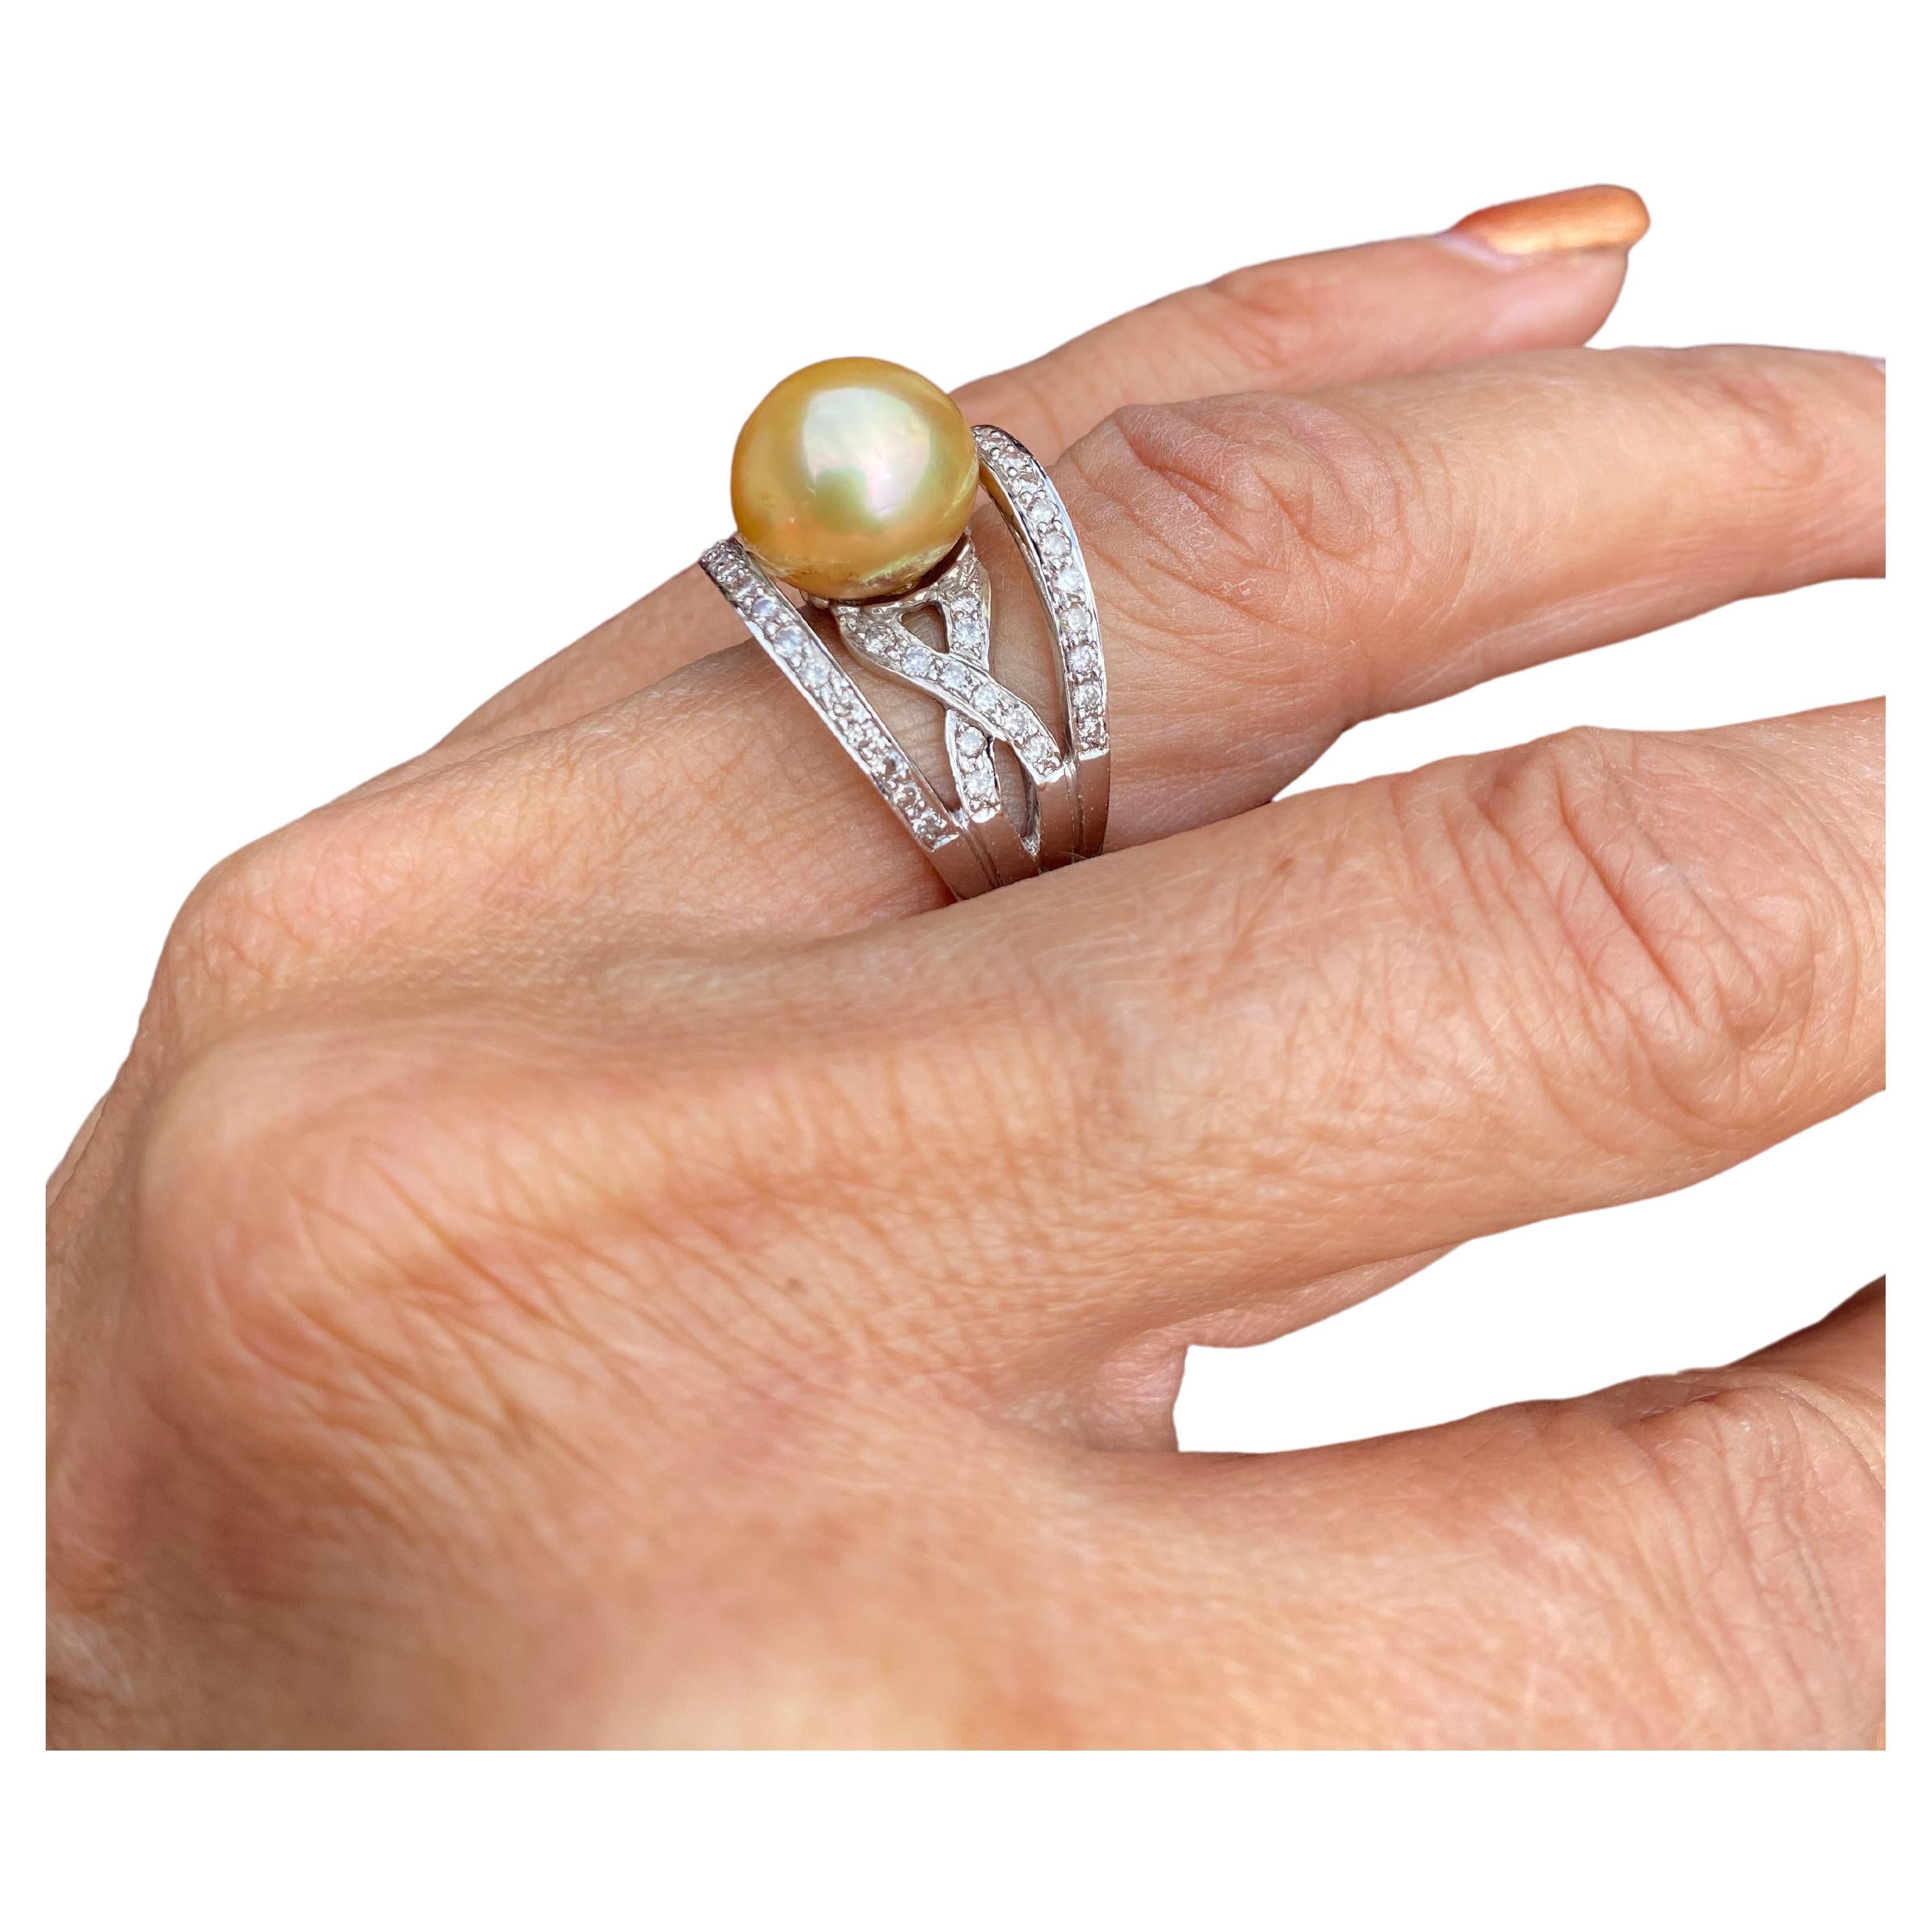 L'anneau a une largeur de 16 mm et est centré par une perle dorée de qualité de 12 mm. La qualité de la perle est de qualité A avec très peu de défauts.
Les diamants sont pavés et sertis dans un design moderne et contemporain, pour un poids total de